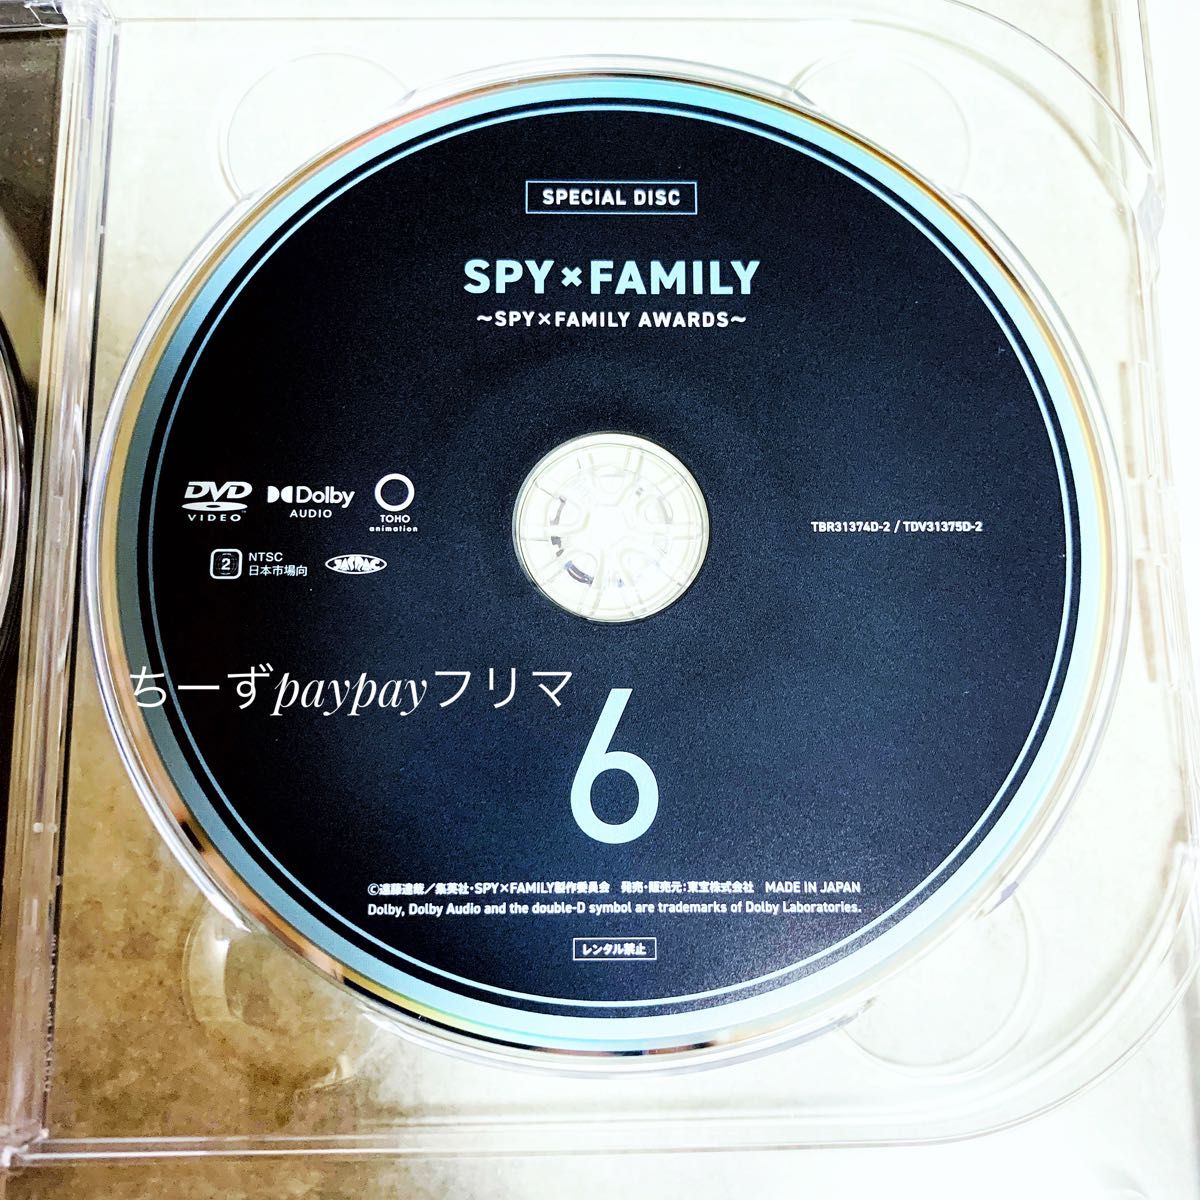 SPY×FAMILY スパイファミリー DVD 特典 スペシャルディスク 声優 朗読劇 映像 アワードコーナー 6巻